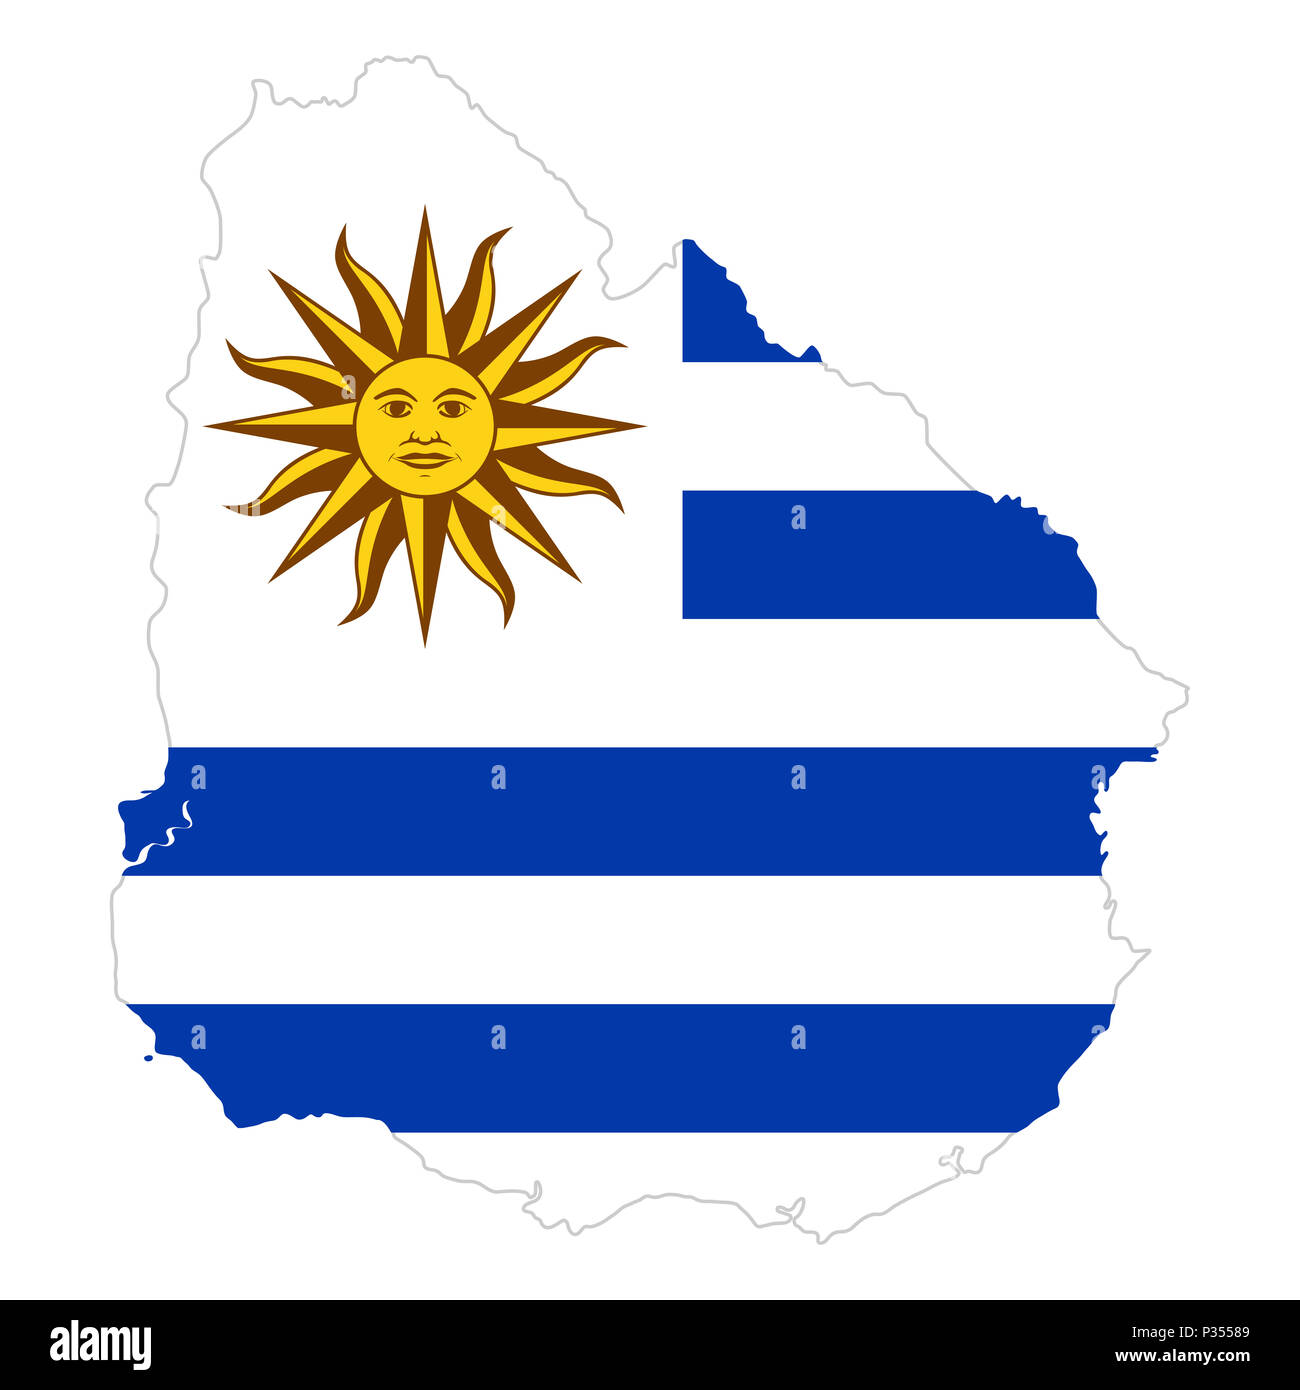 Bandera nacional de Uruguay con Sol de Mayo en el país silueta. La bandera del país con el emblema nacional Sol de Mayo en el cantón de blanco y azul y blanco. Foto de stock